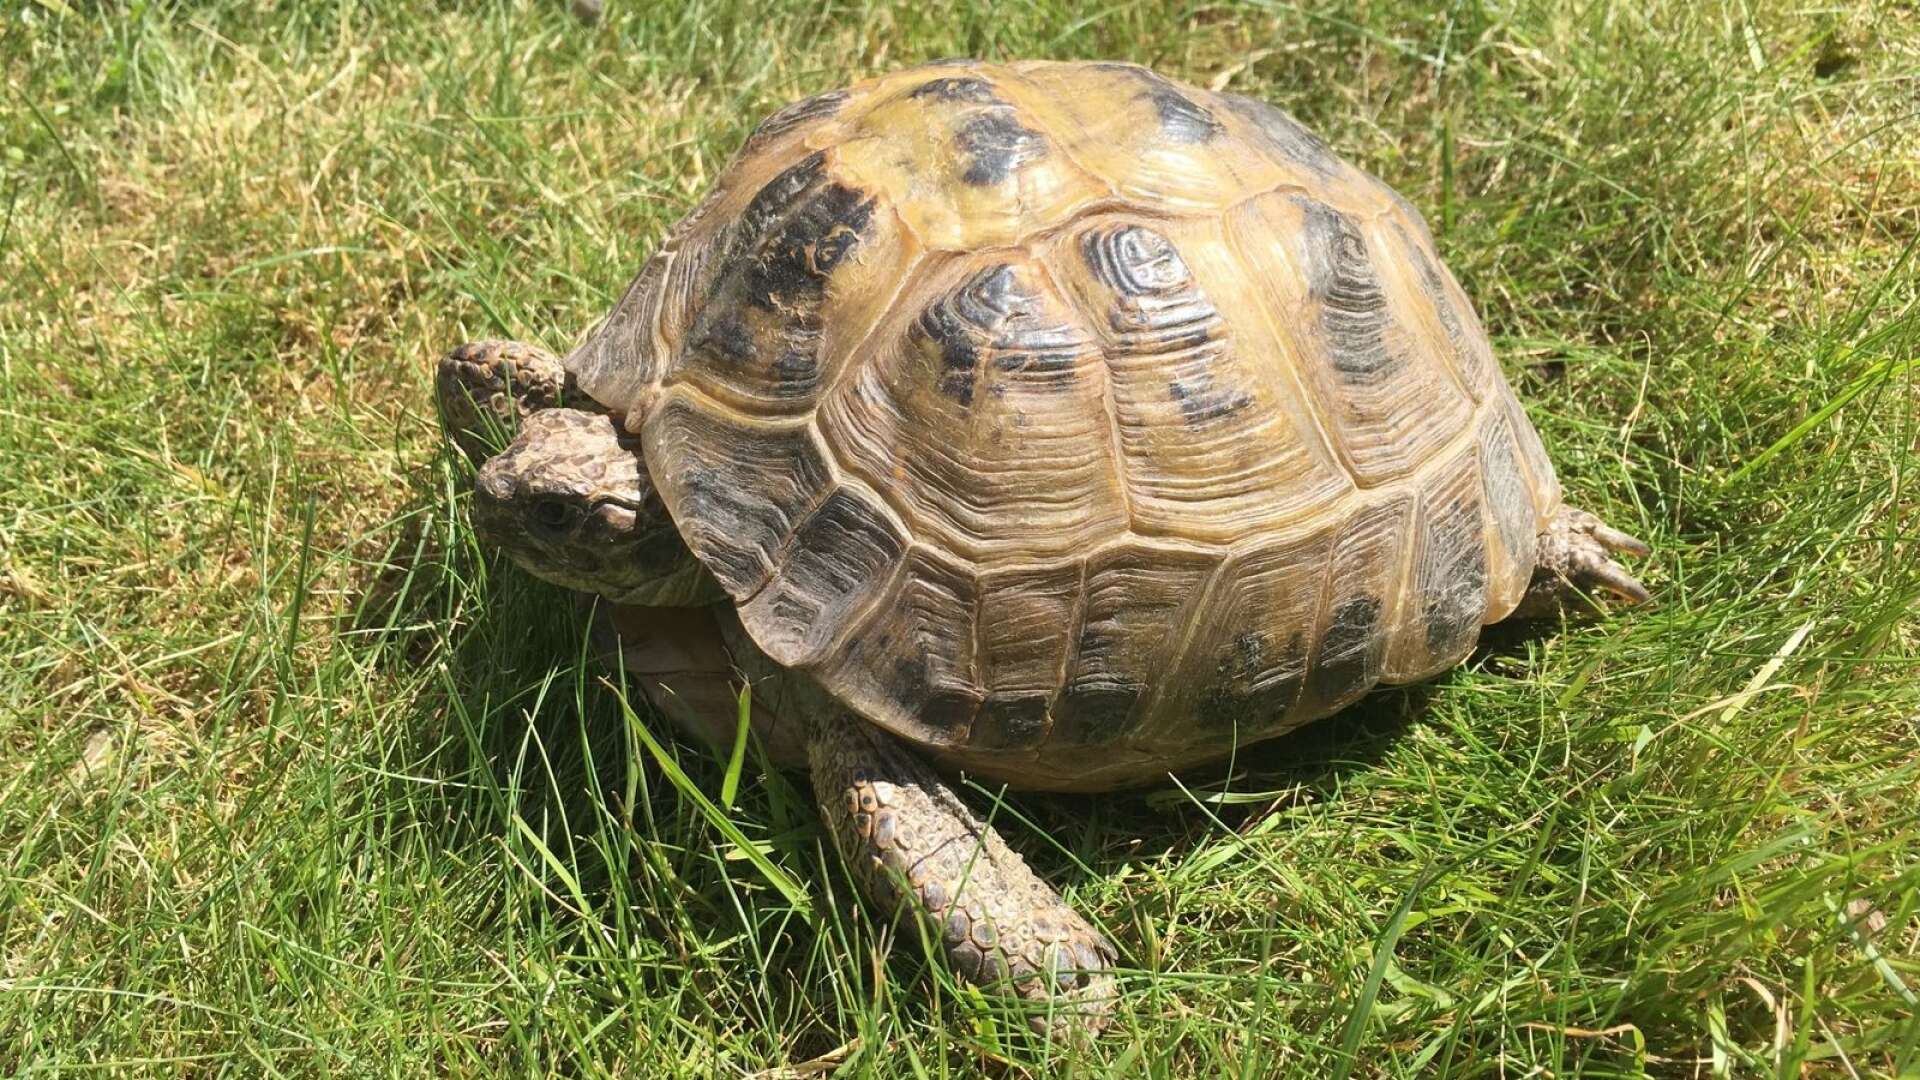 Sköldpaddan Musse har varit försvunnen i mer än en vecka. Nu vädjar familjen Nyholm att allmänheten ska höra av sig om man hittar en sköldpadda i Karlstad.